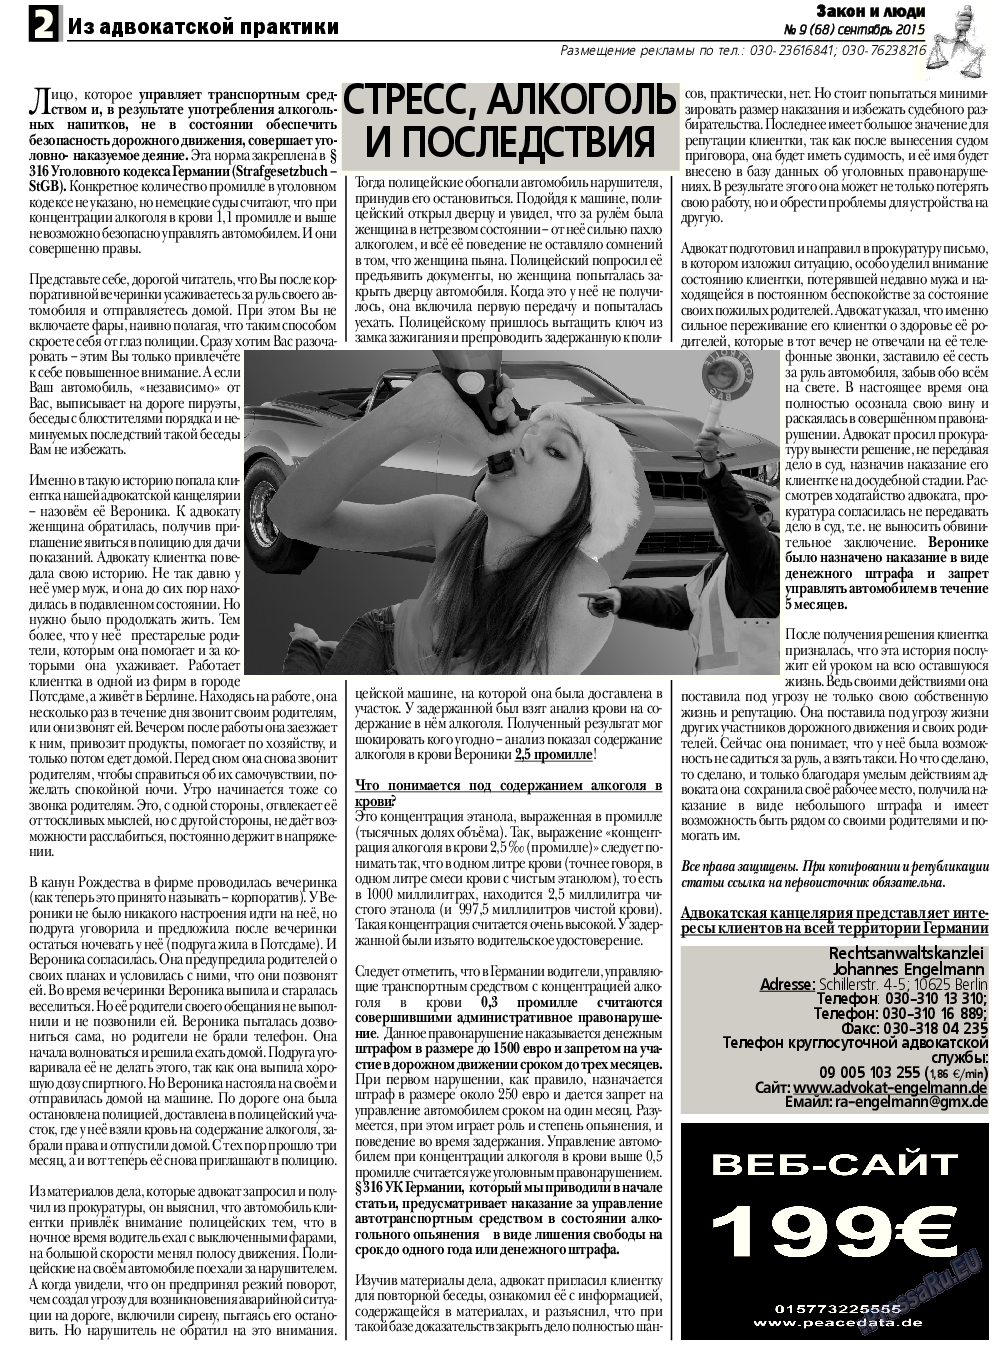 Закон и люди, газета. 2015 №9 стр.2